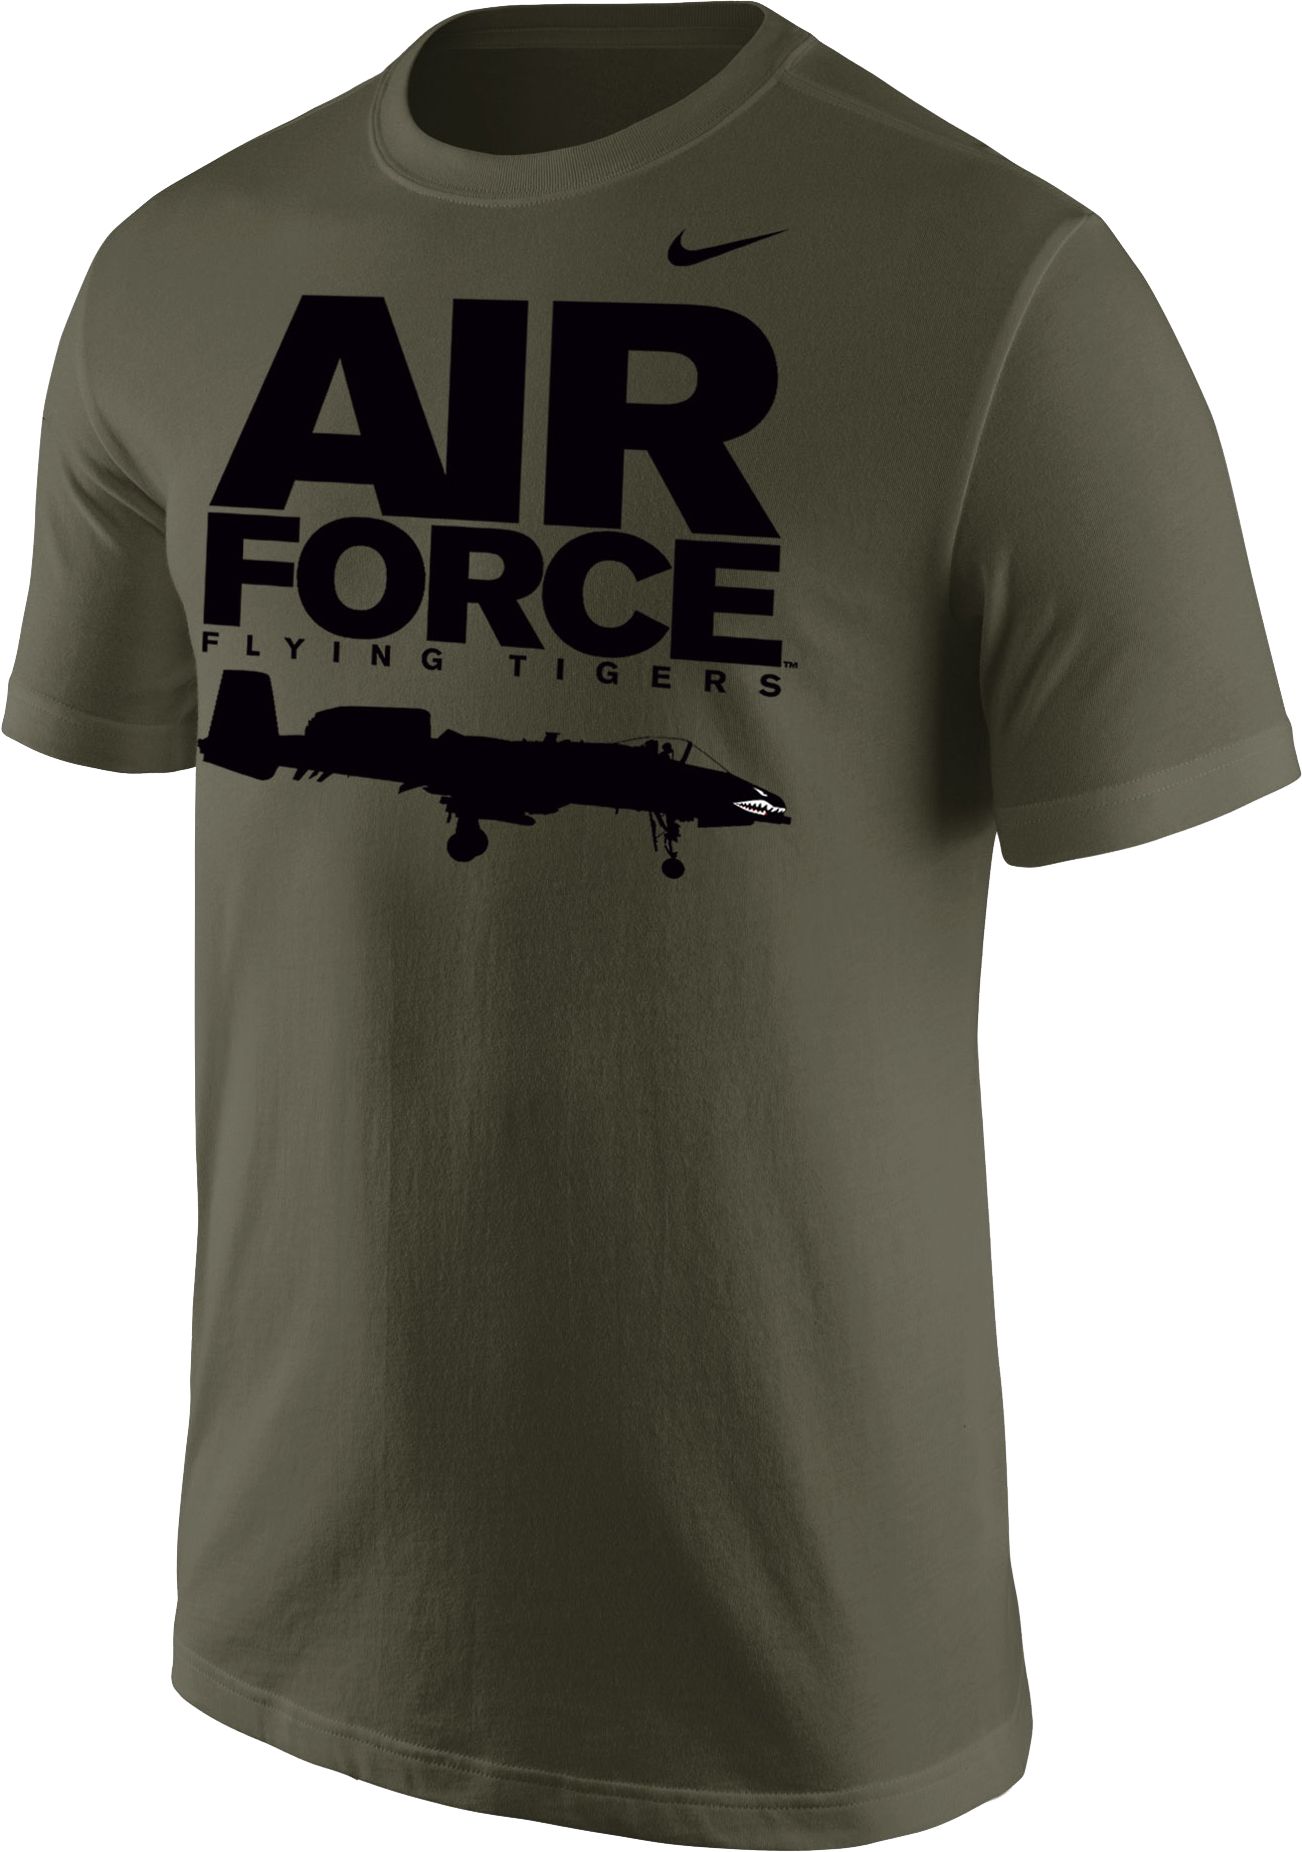 nike air force shirt cheap online